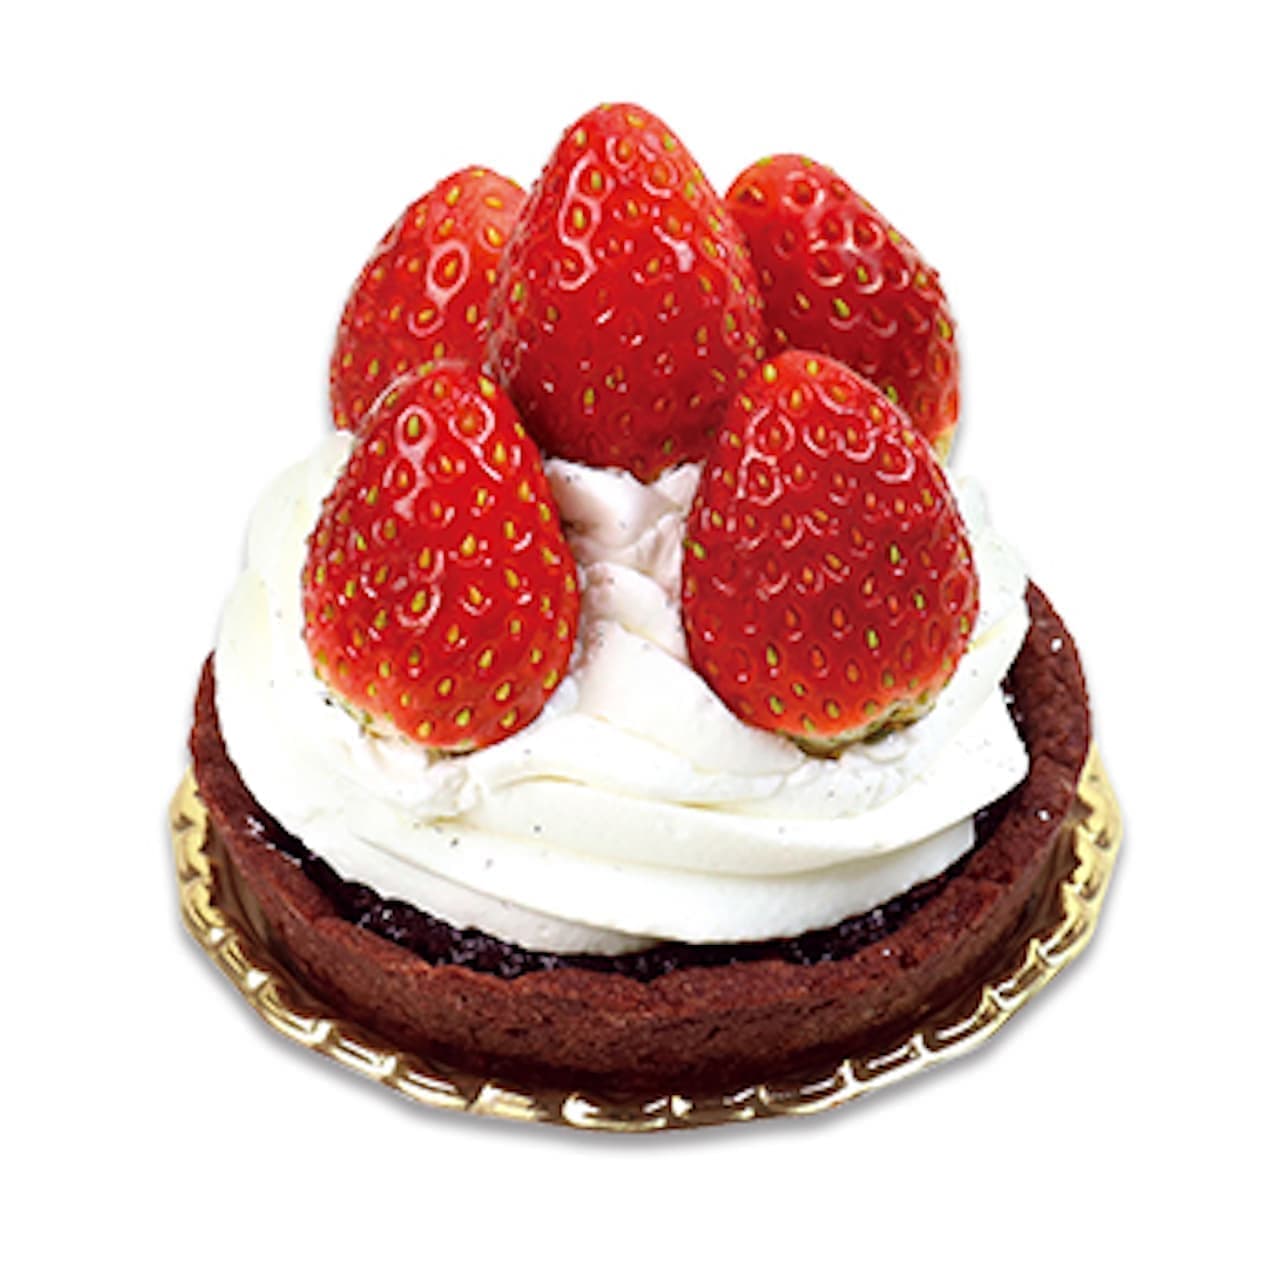 Fujiya "Chocolat Tart with plenty of strawberries" (Japanese only)